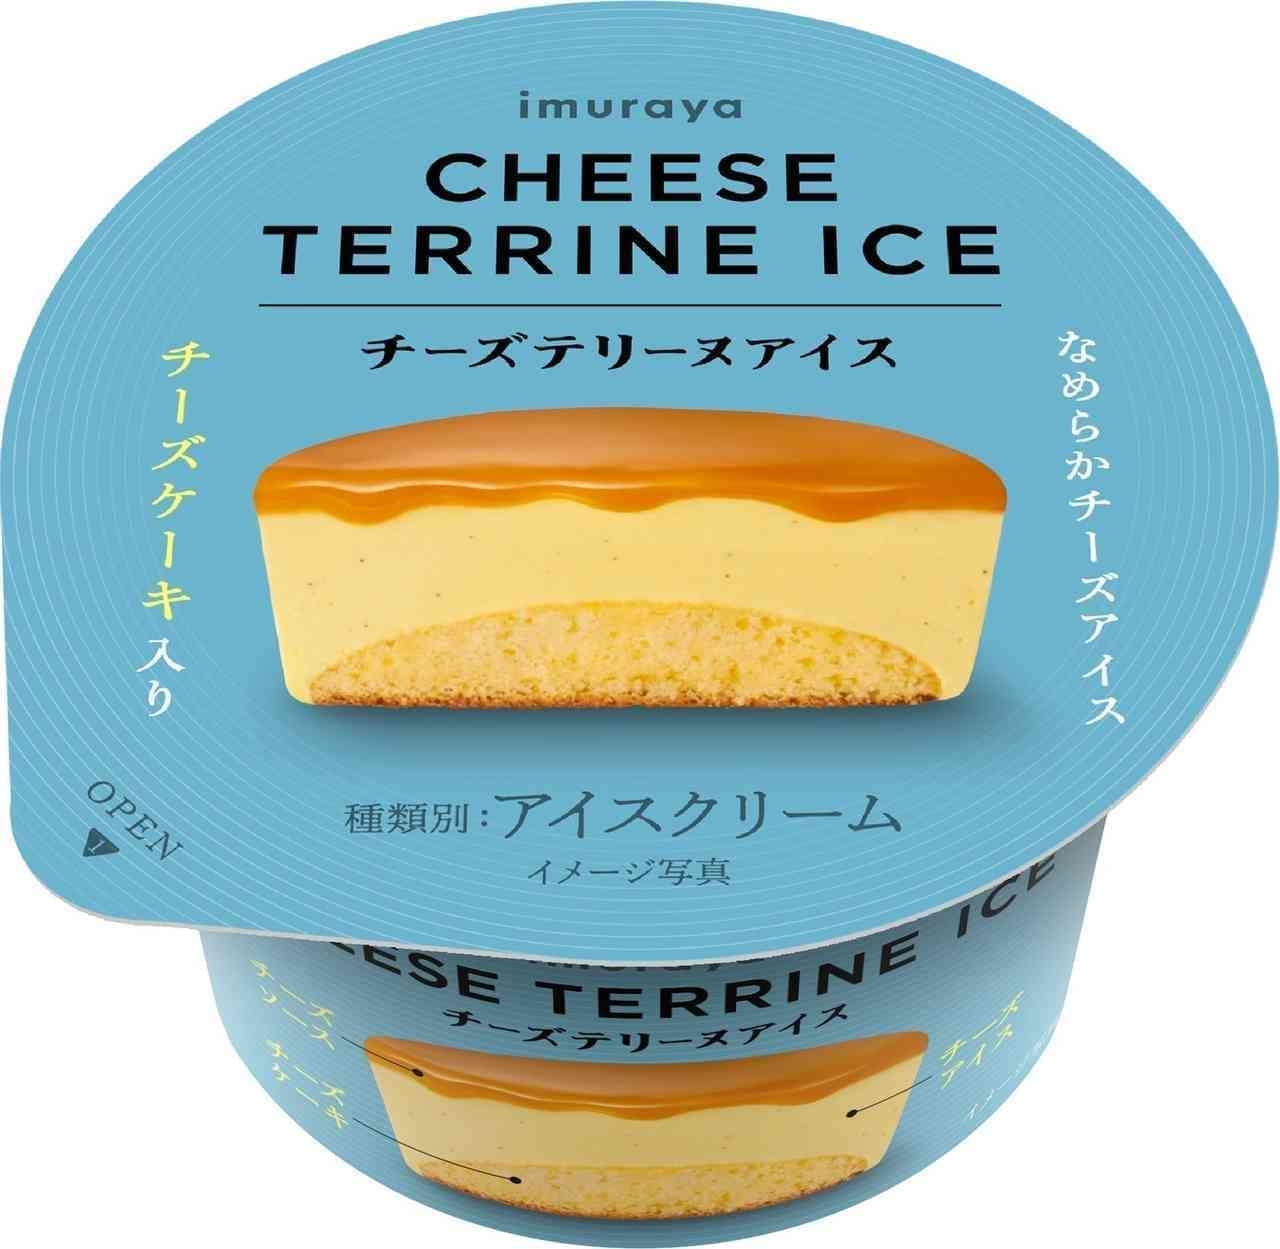 Imuraya "Cheese Terrine Ice Cream